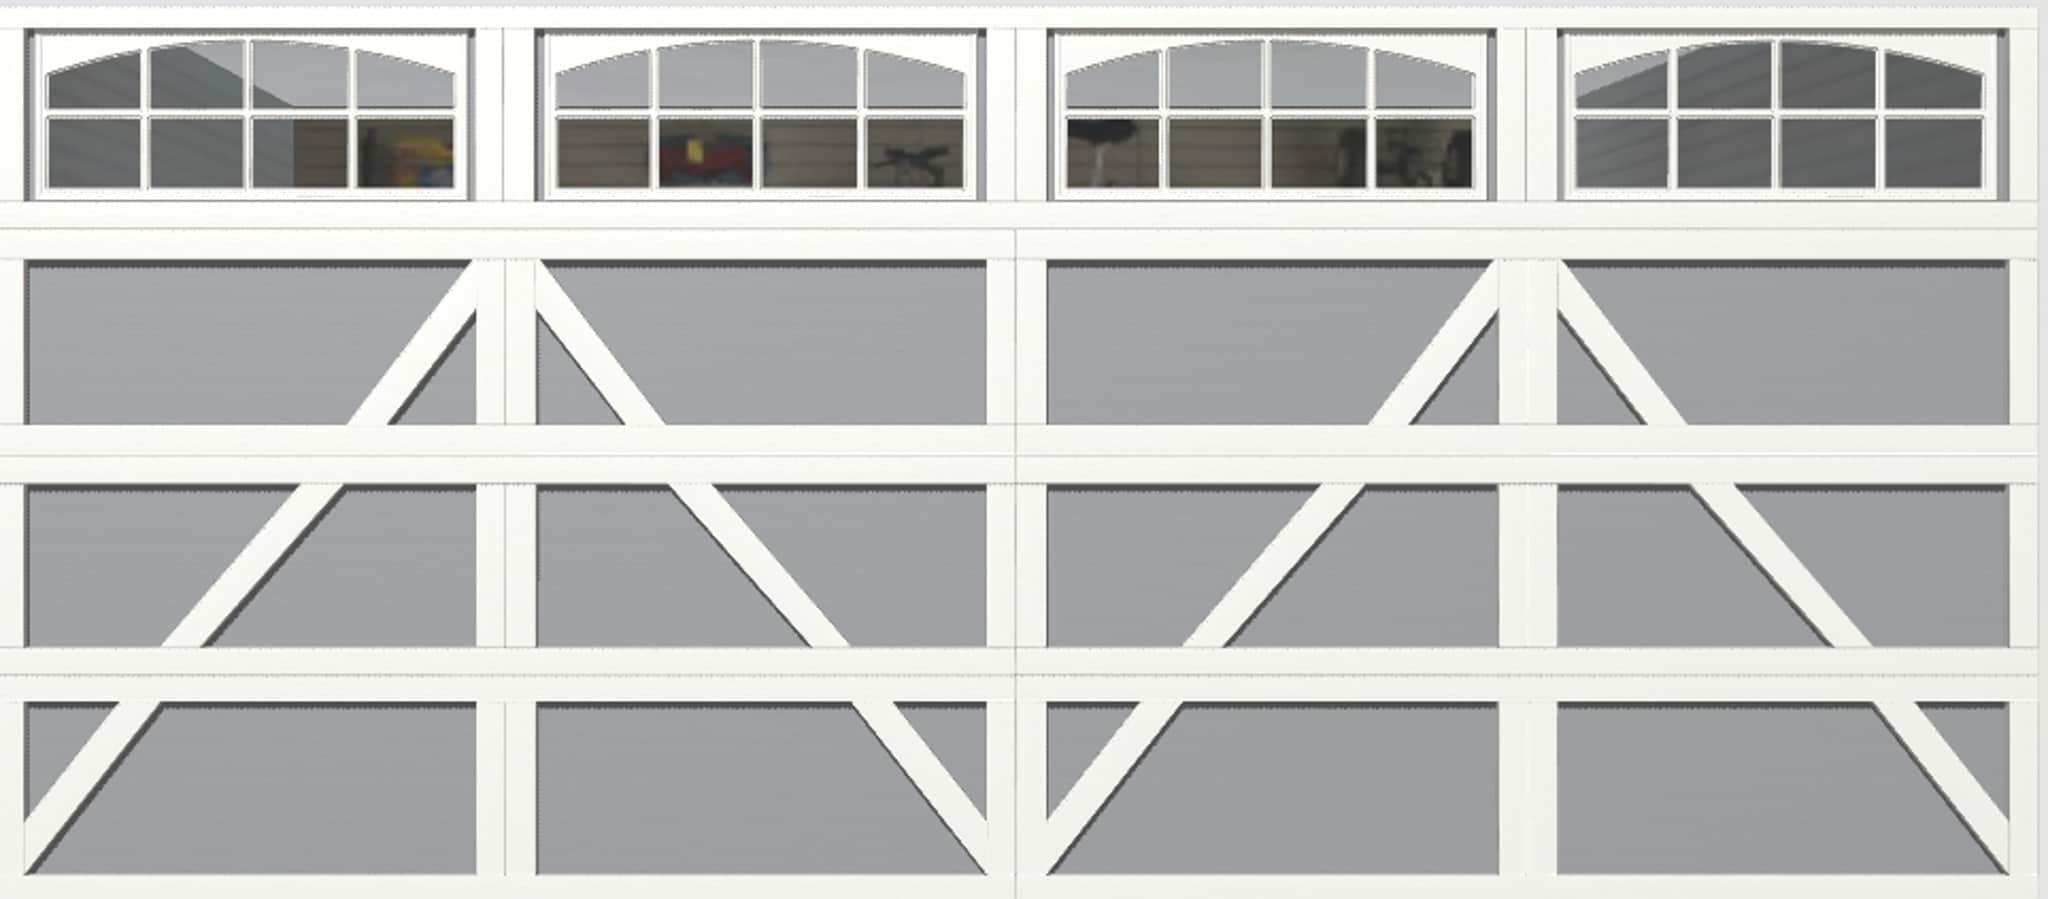 Wayne Dalton Classic Steel Model 9100 16-ft x 7-ft Insulated White Double Garage  Door in the Garage Doors department at